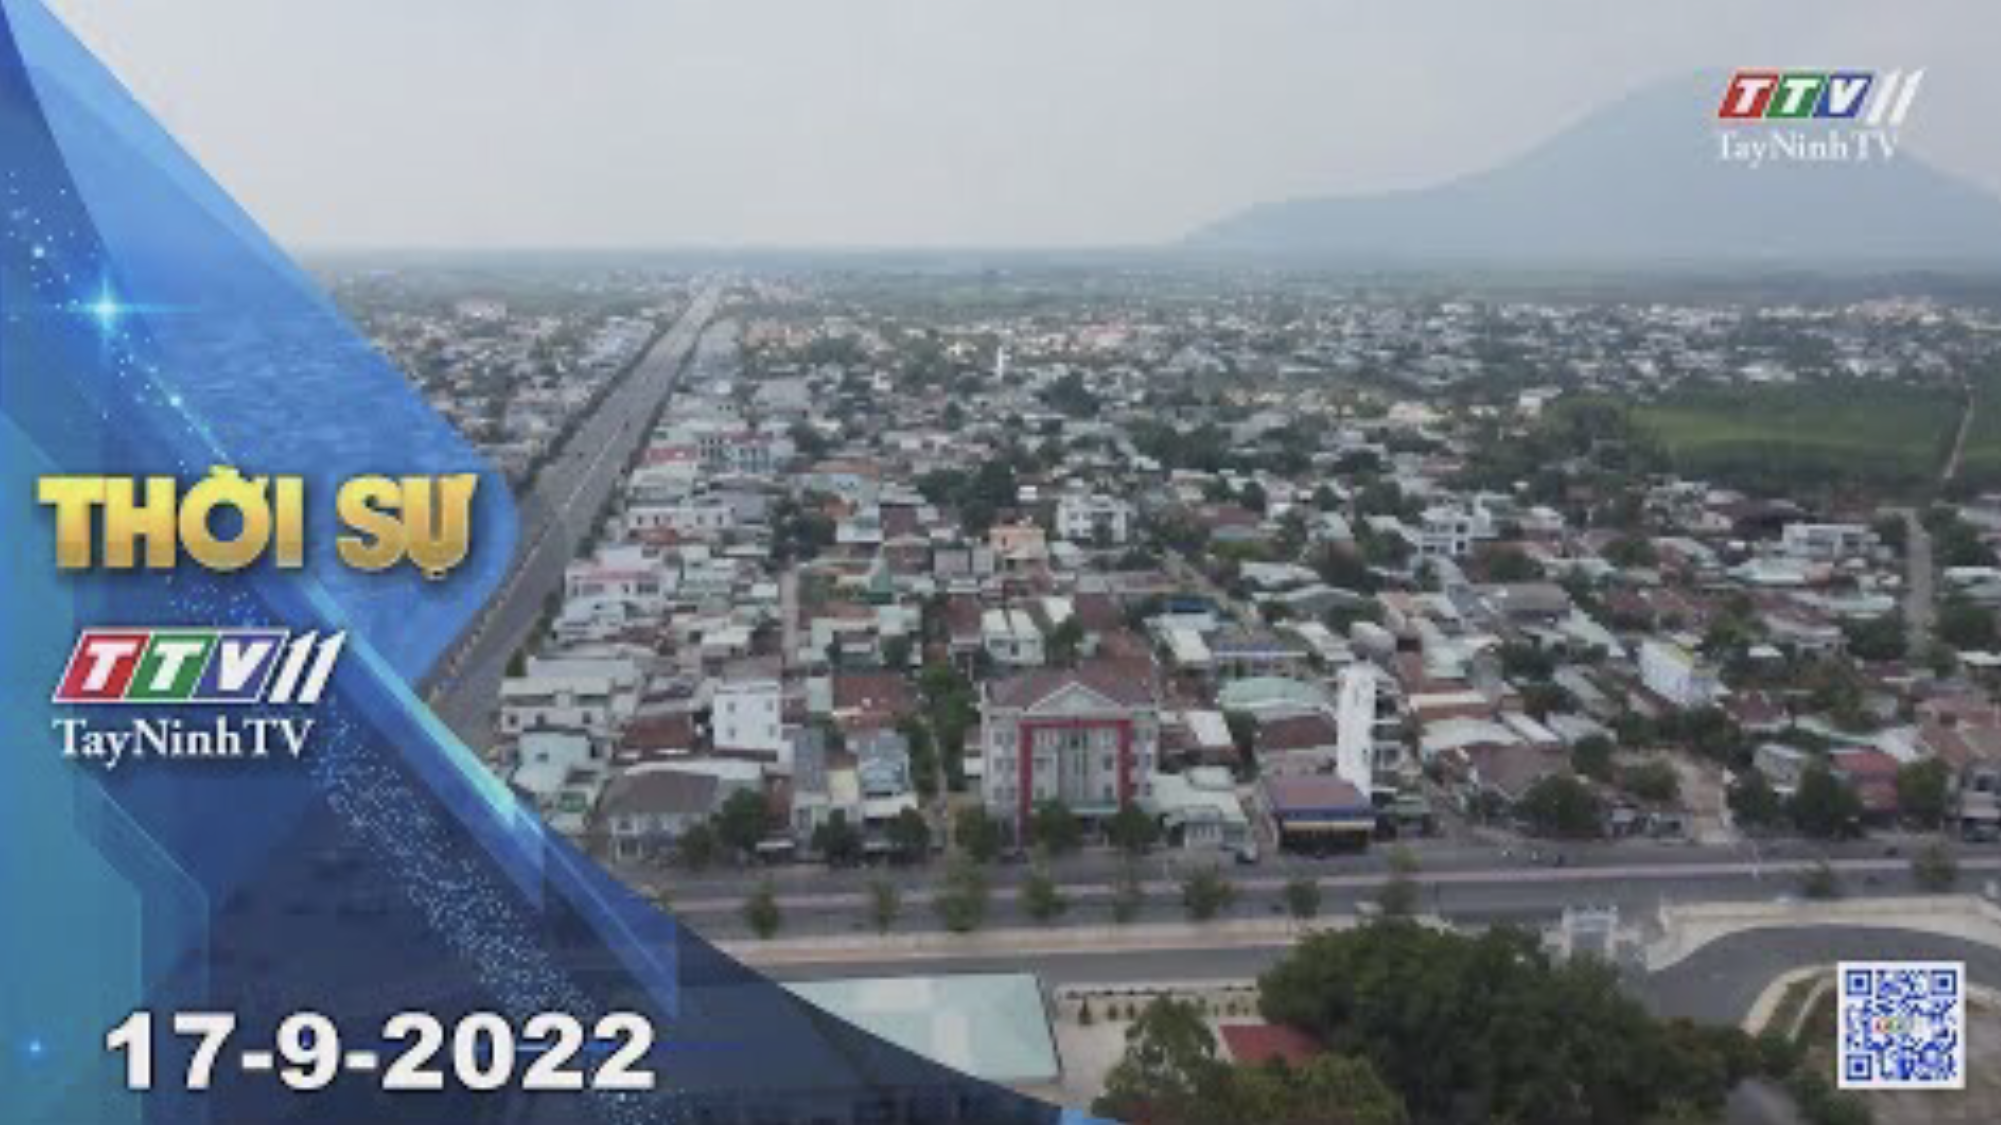 Thời sự Tây Ninh 17-9-2022 | Tin tức hôm nay | TayNinhTV